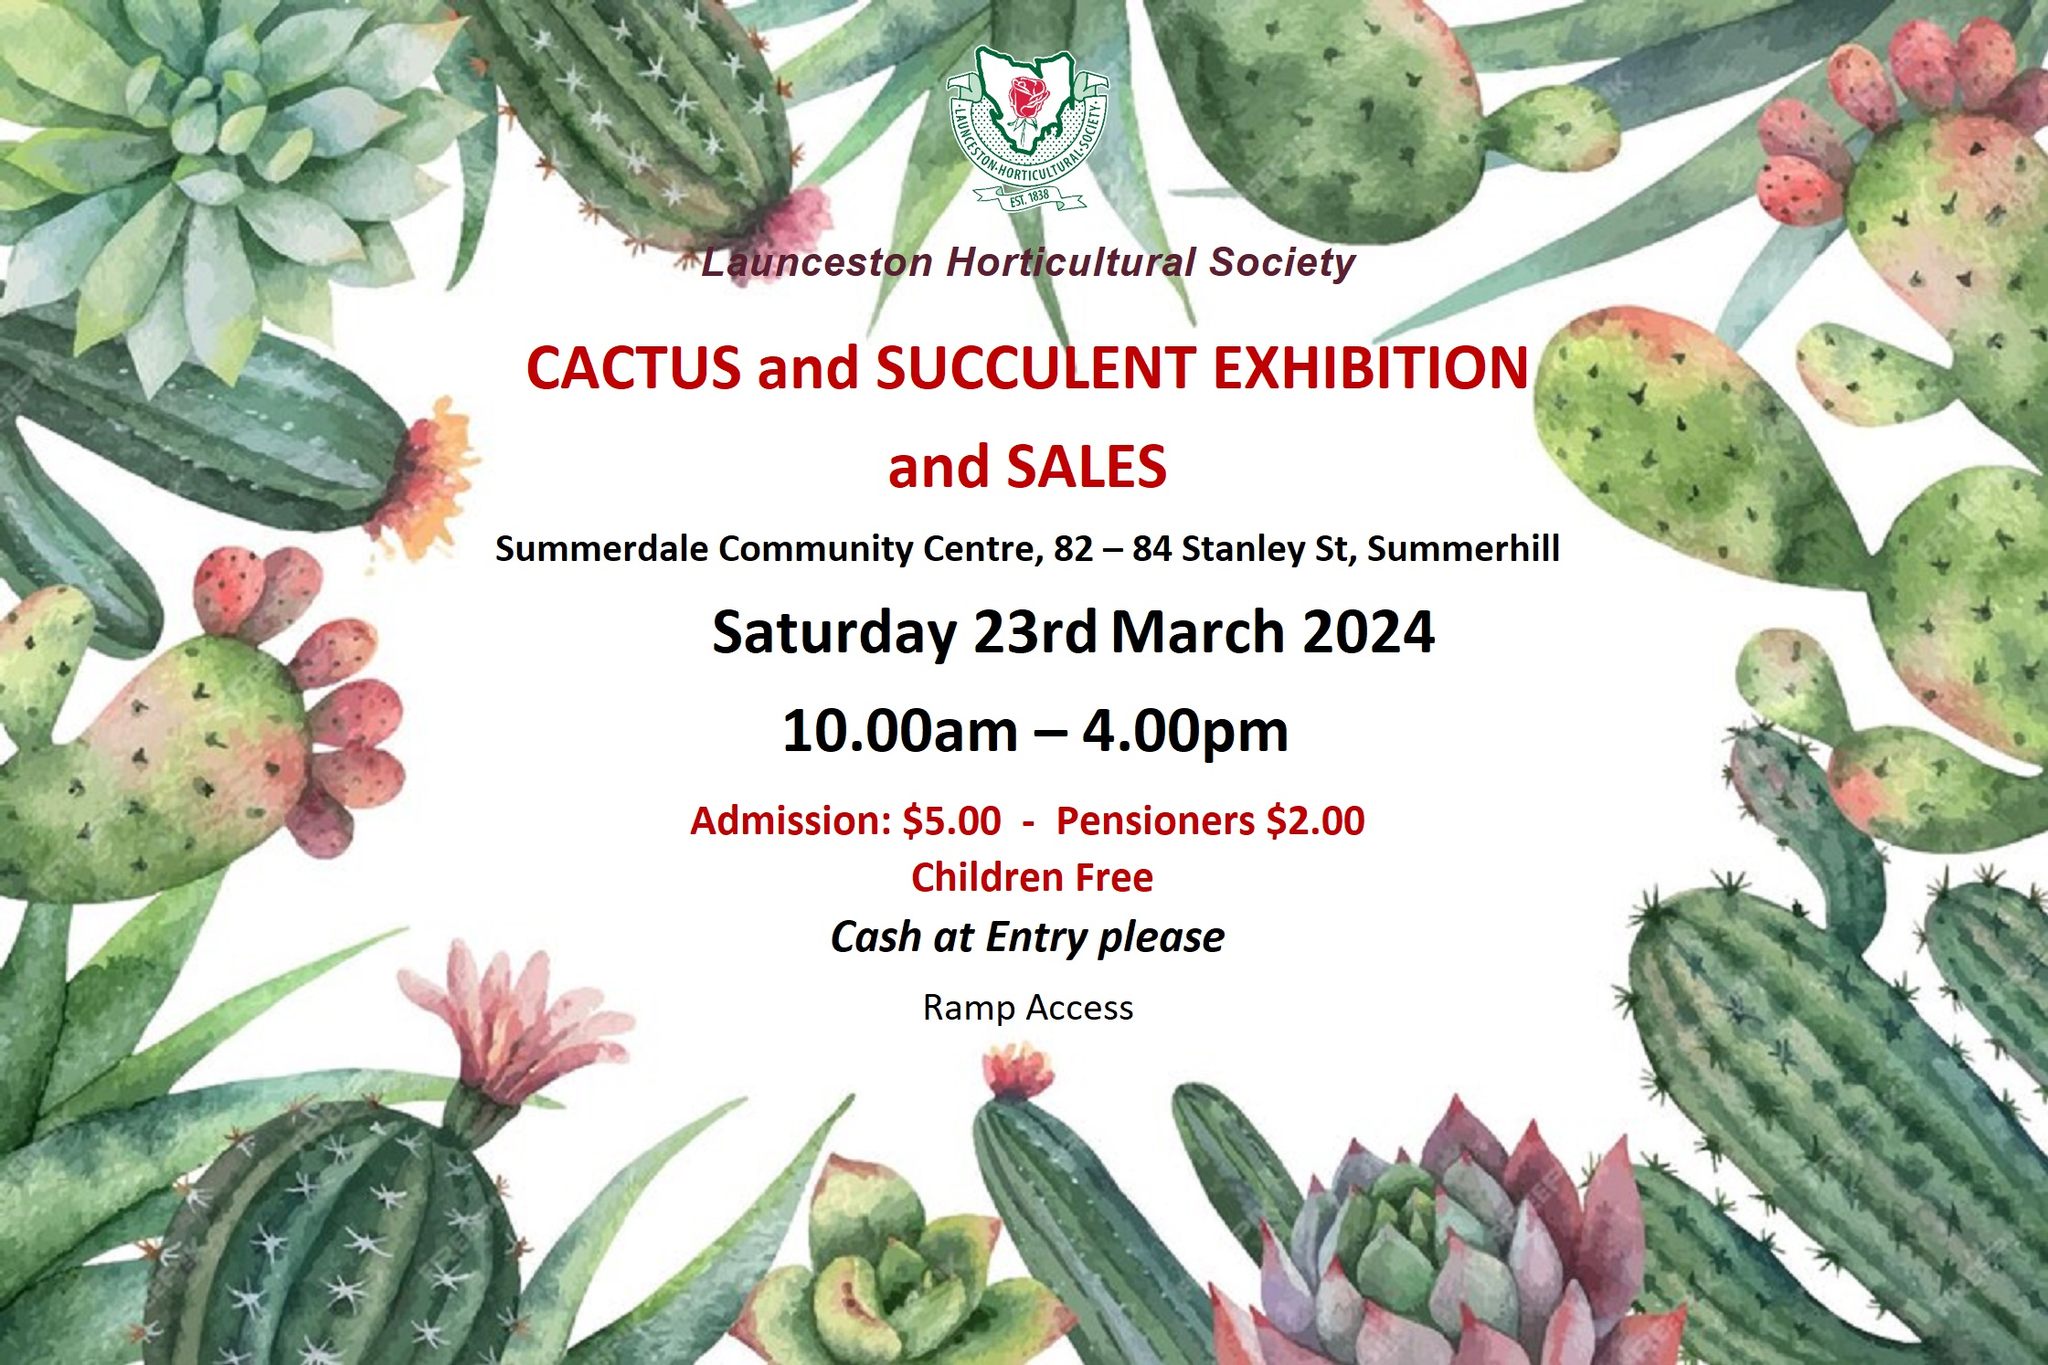 Cactus & Succulent Exhibition, 24 March, 2-4 pm, Summerdale Community Centre